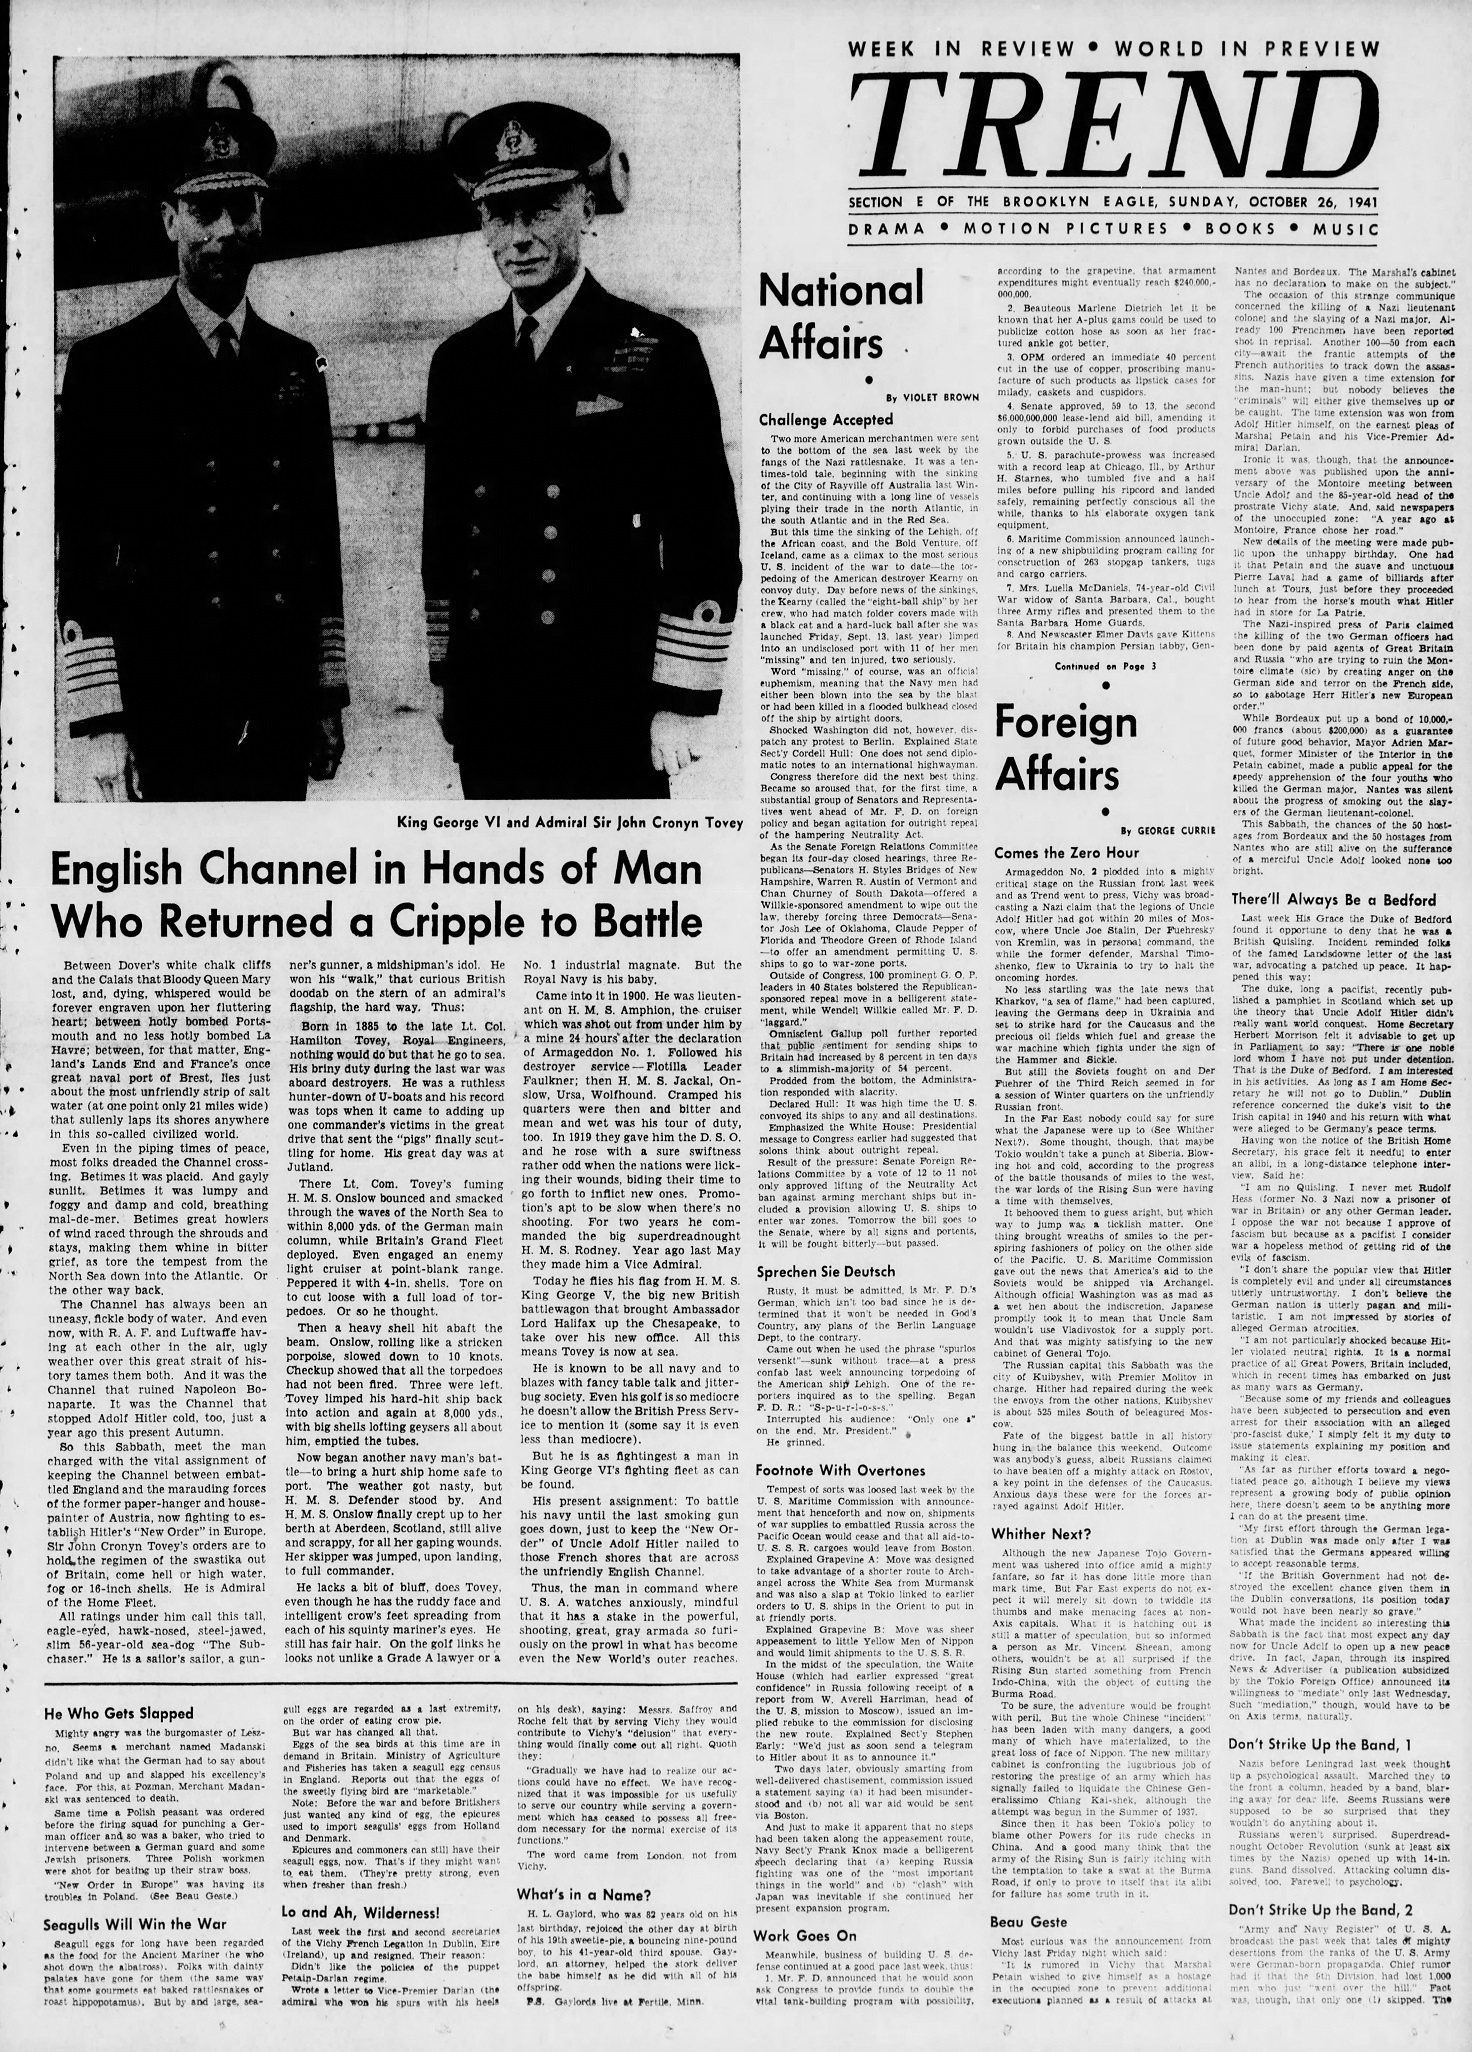 The_Brooklyn_Daily_Eagle_Sun__Oct_26__1941_(3).jpg